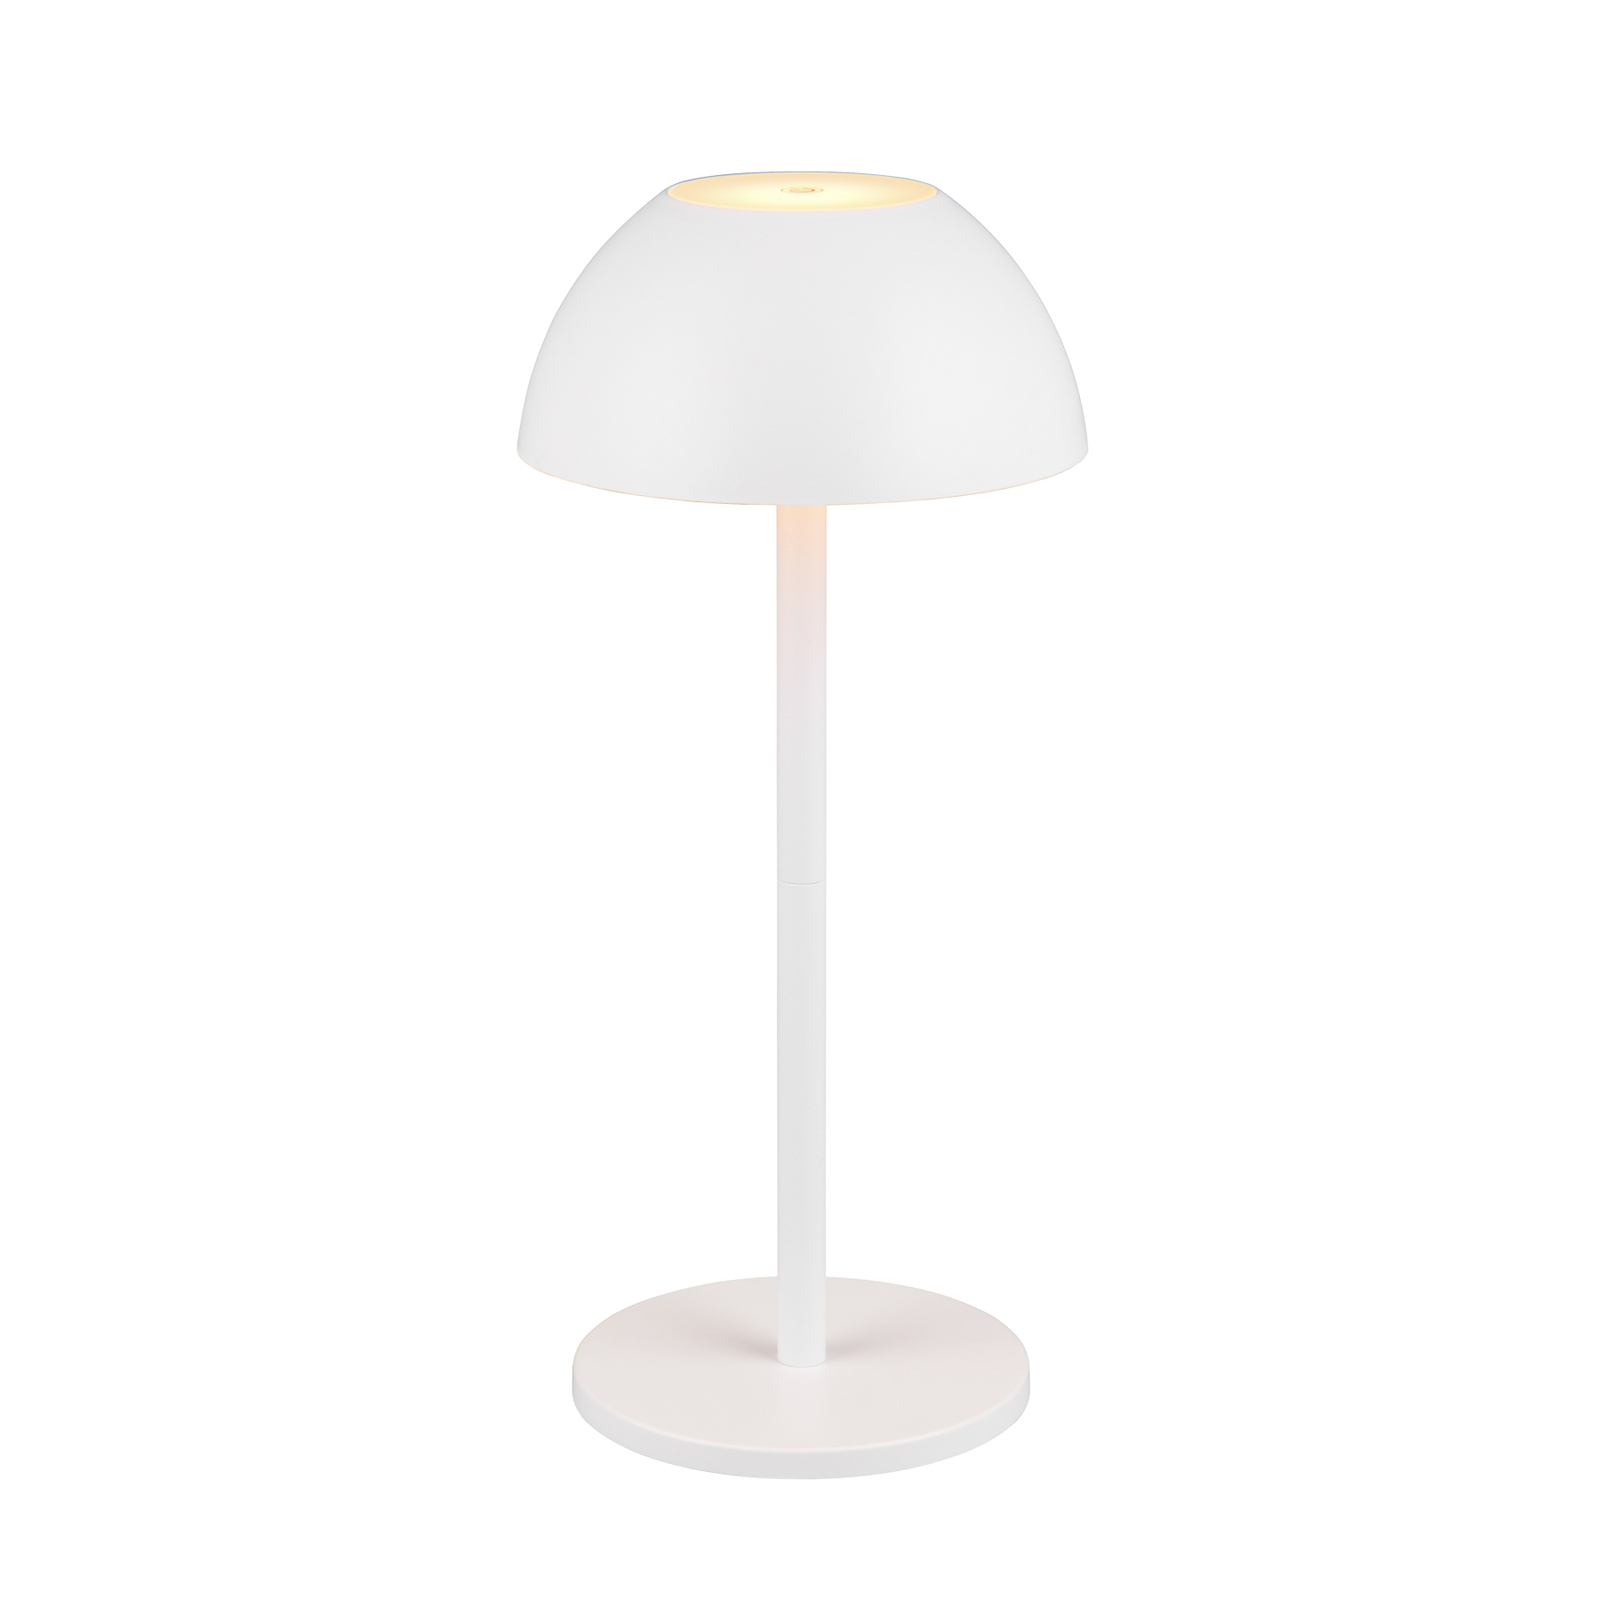 Ricardo LED stolná lampa s dobíjaním, biela, výška 30 cm, plast